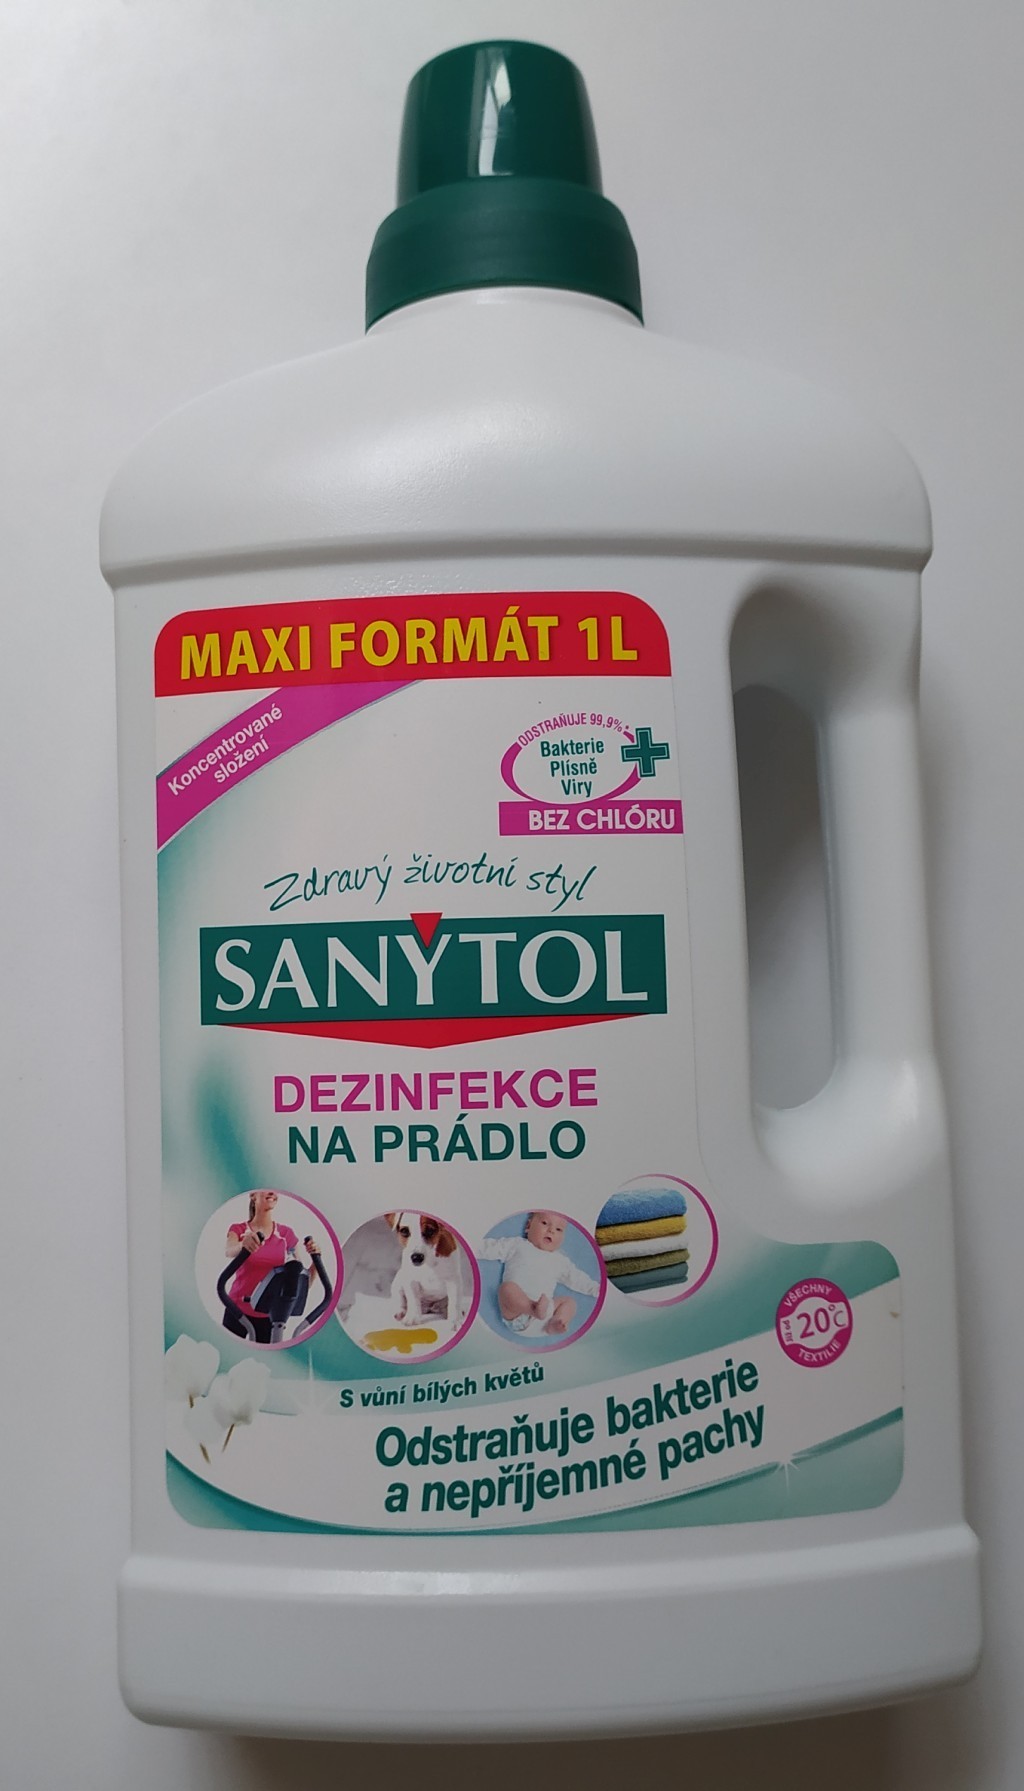 Sanytol dezinfekce na prádlo